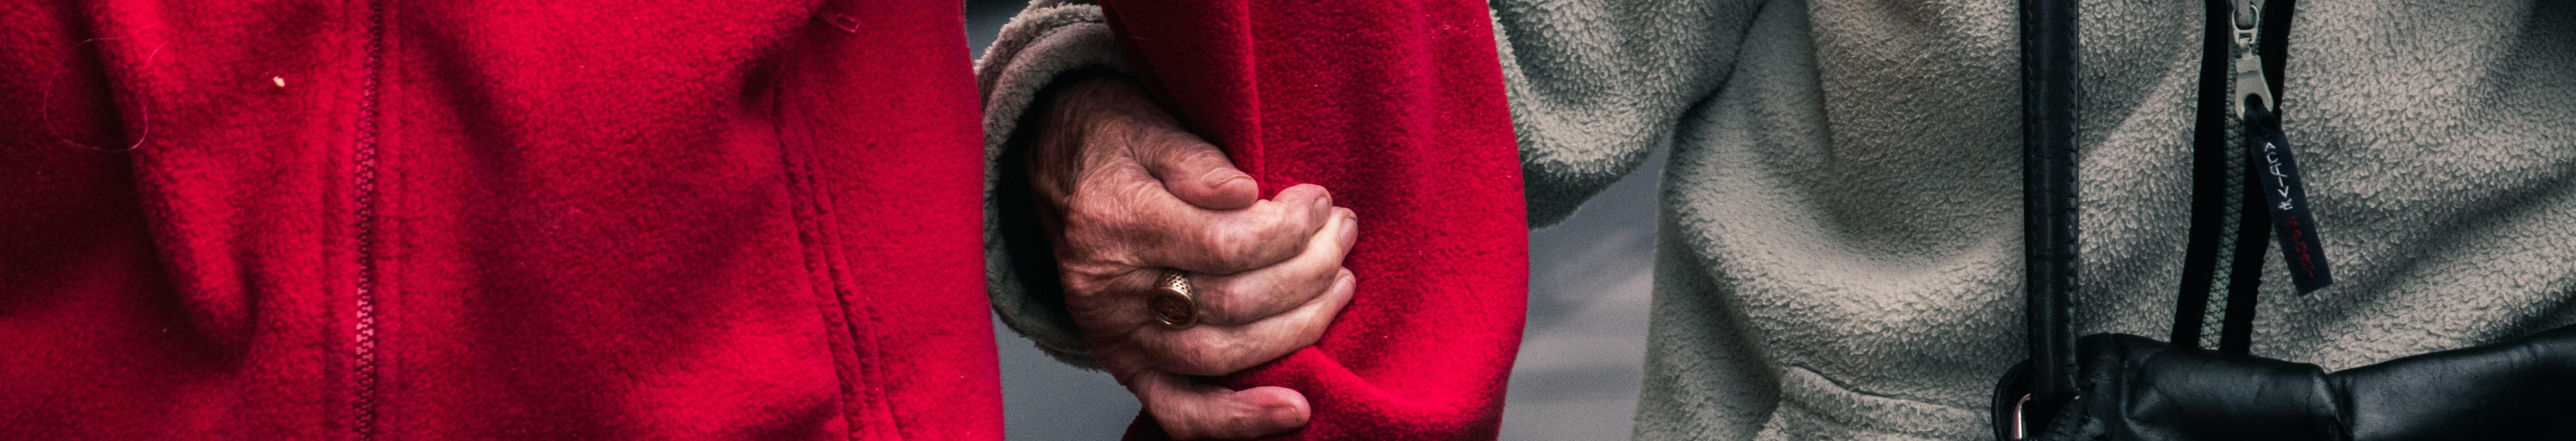 Imatge dues persones grans agafades del braç al carrer